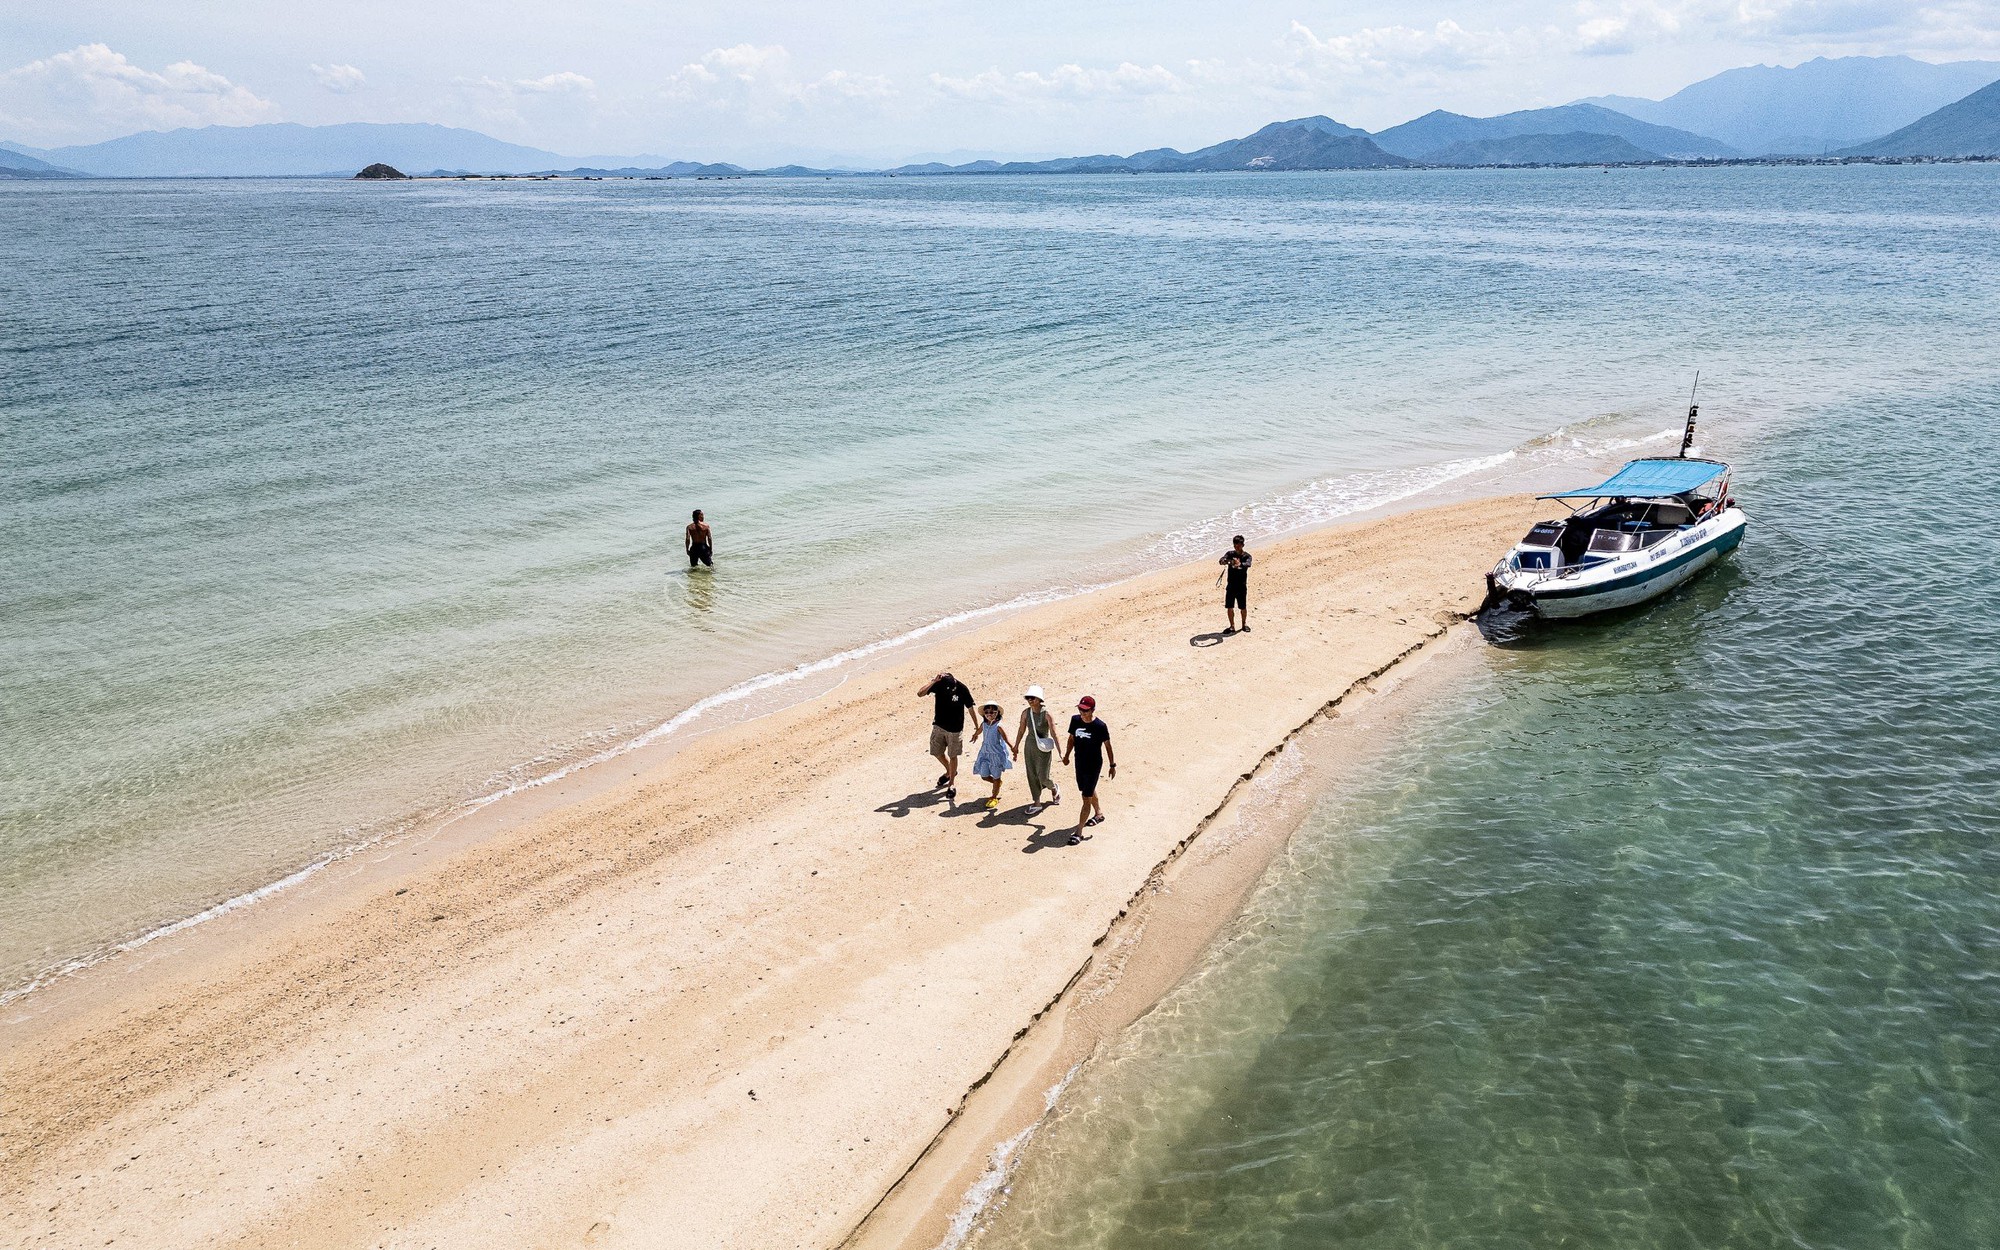 Có lẽ nào đây là làng sở hữu nhiều hòn đảo nhất ở Khánh Hòa, nằm trong vịnh biển đẹp như phim?- Ảnh 4.